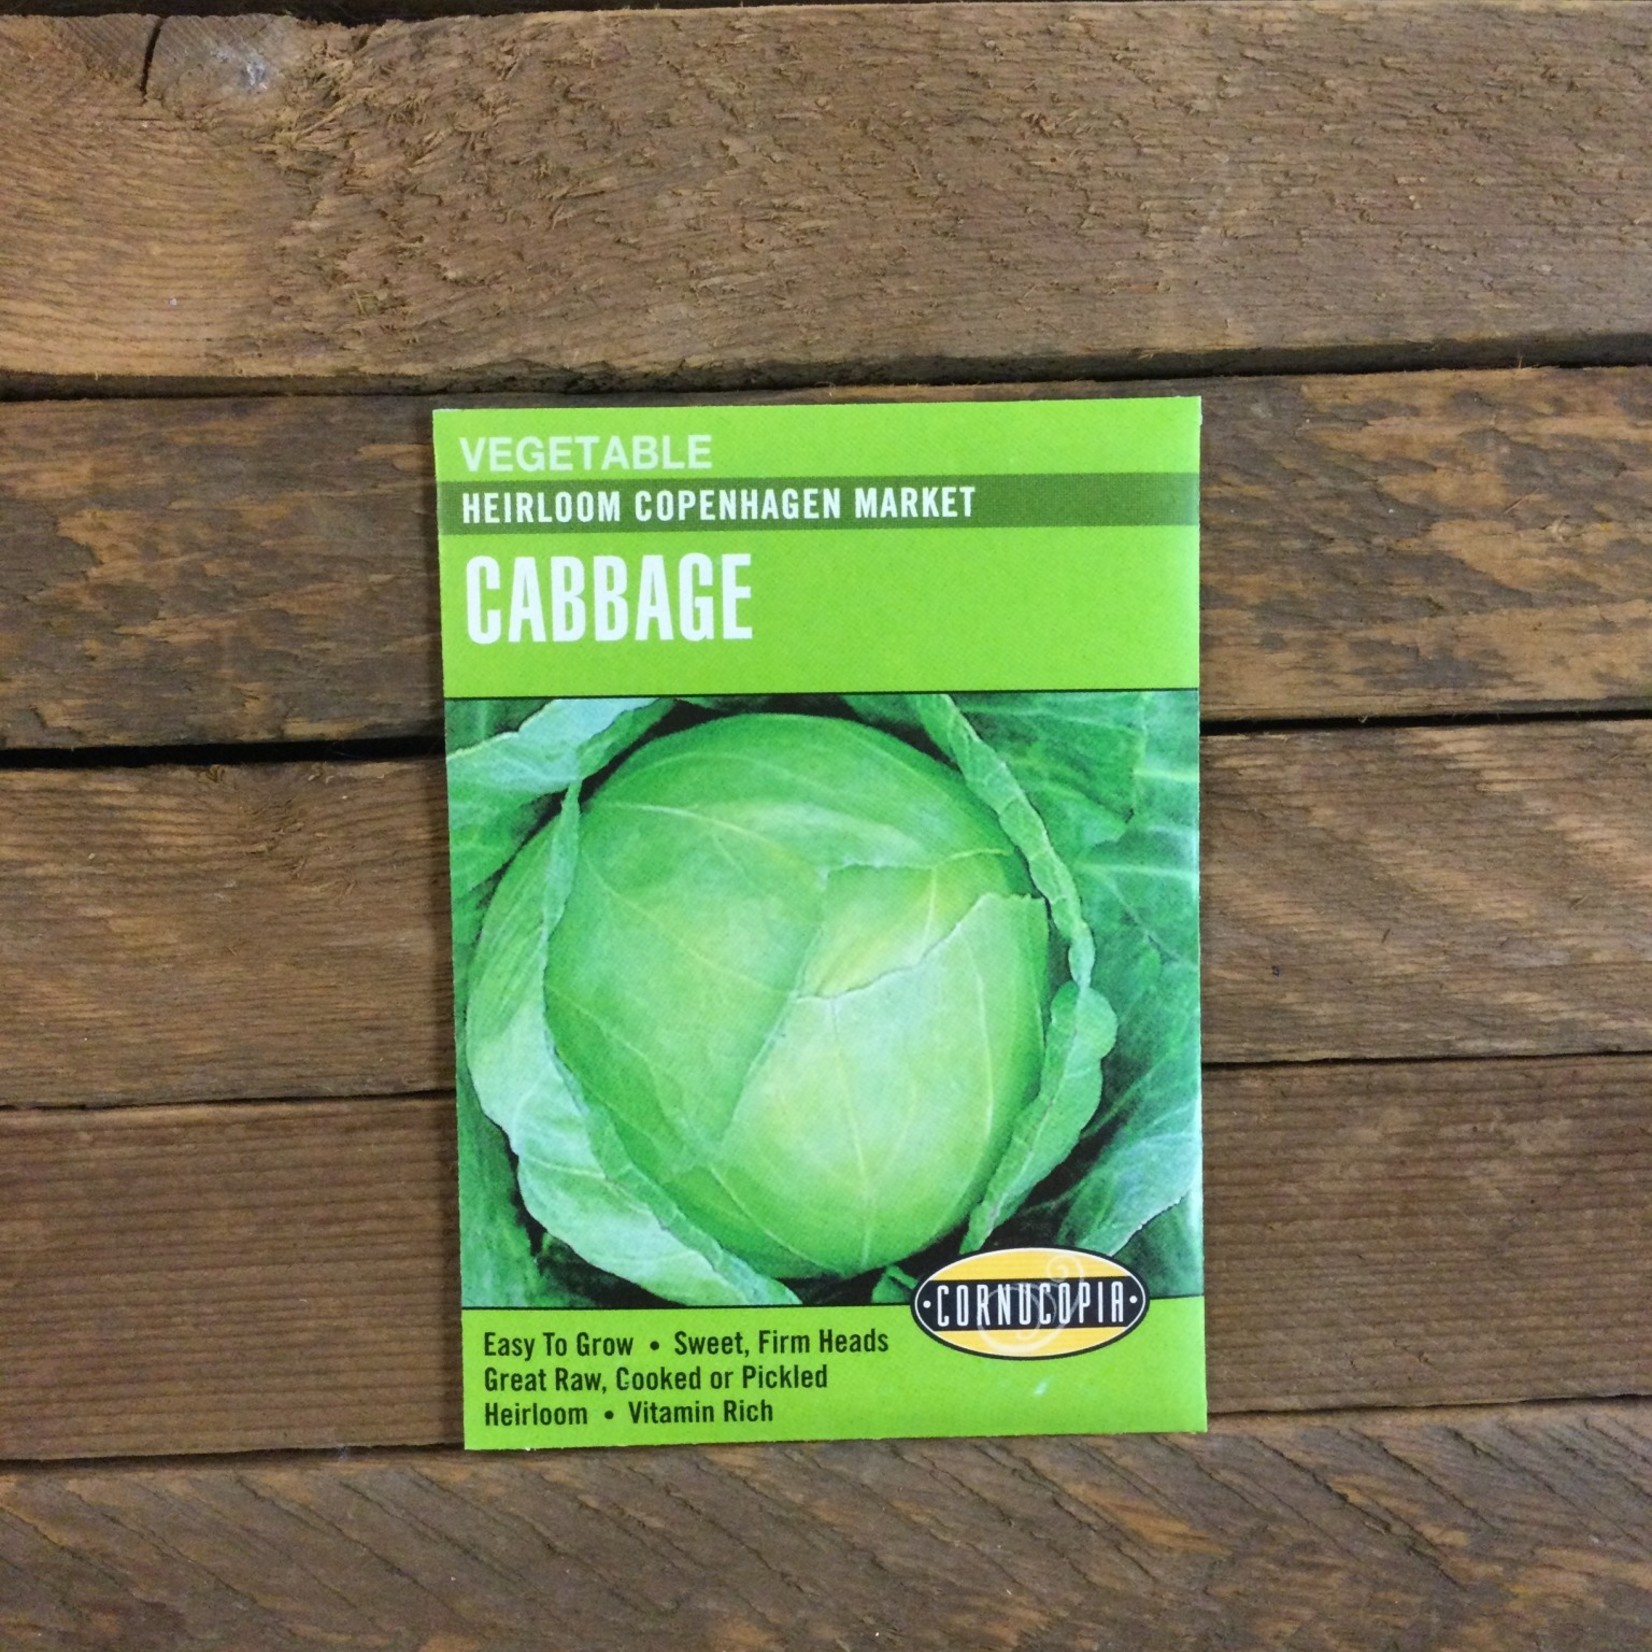 Cornucopia Cabbage Copenhagen Market